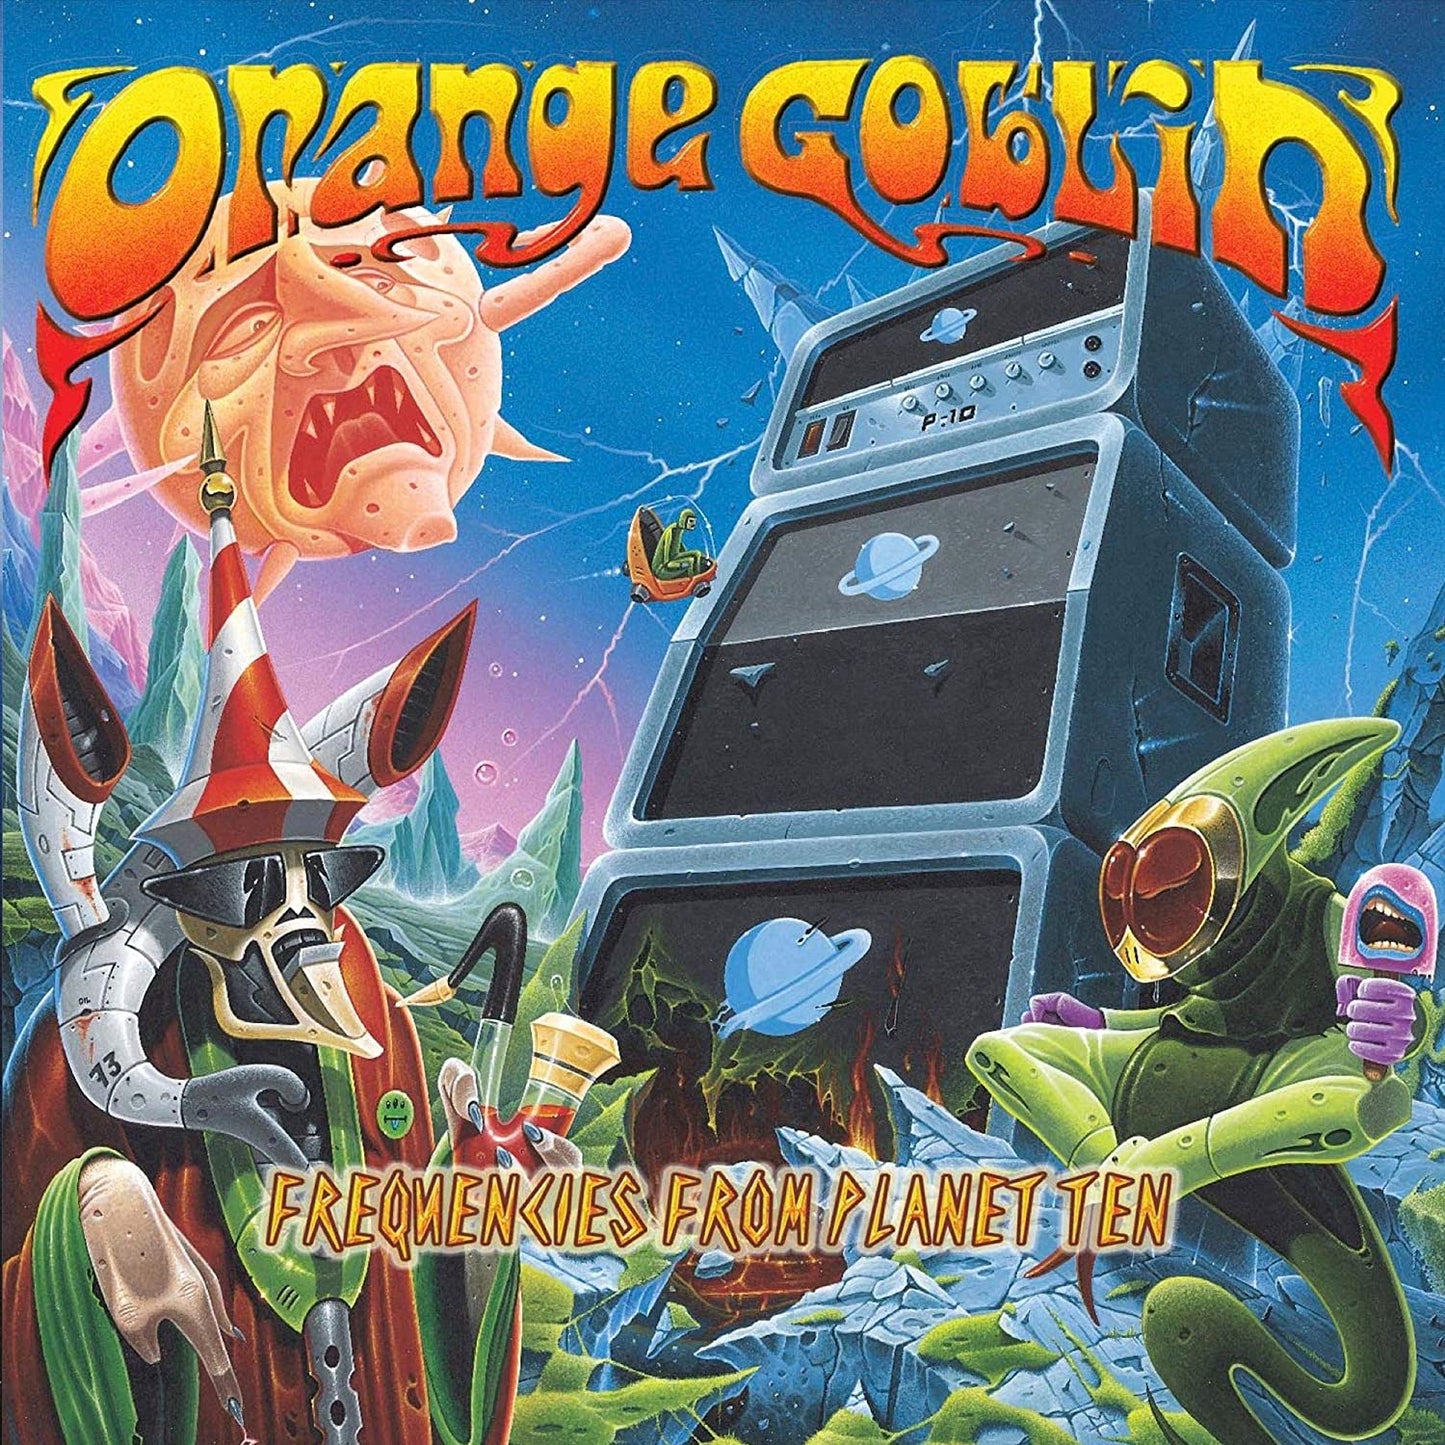 Orange Goblin - Frequencies From Planet Ten CD